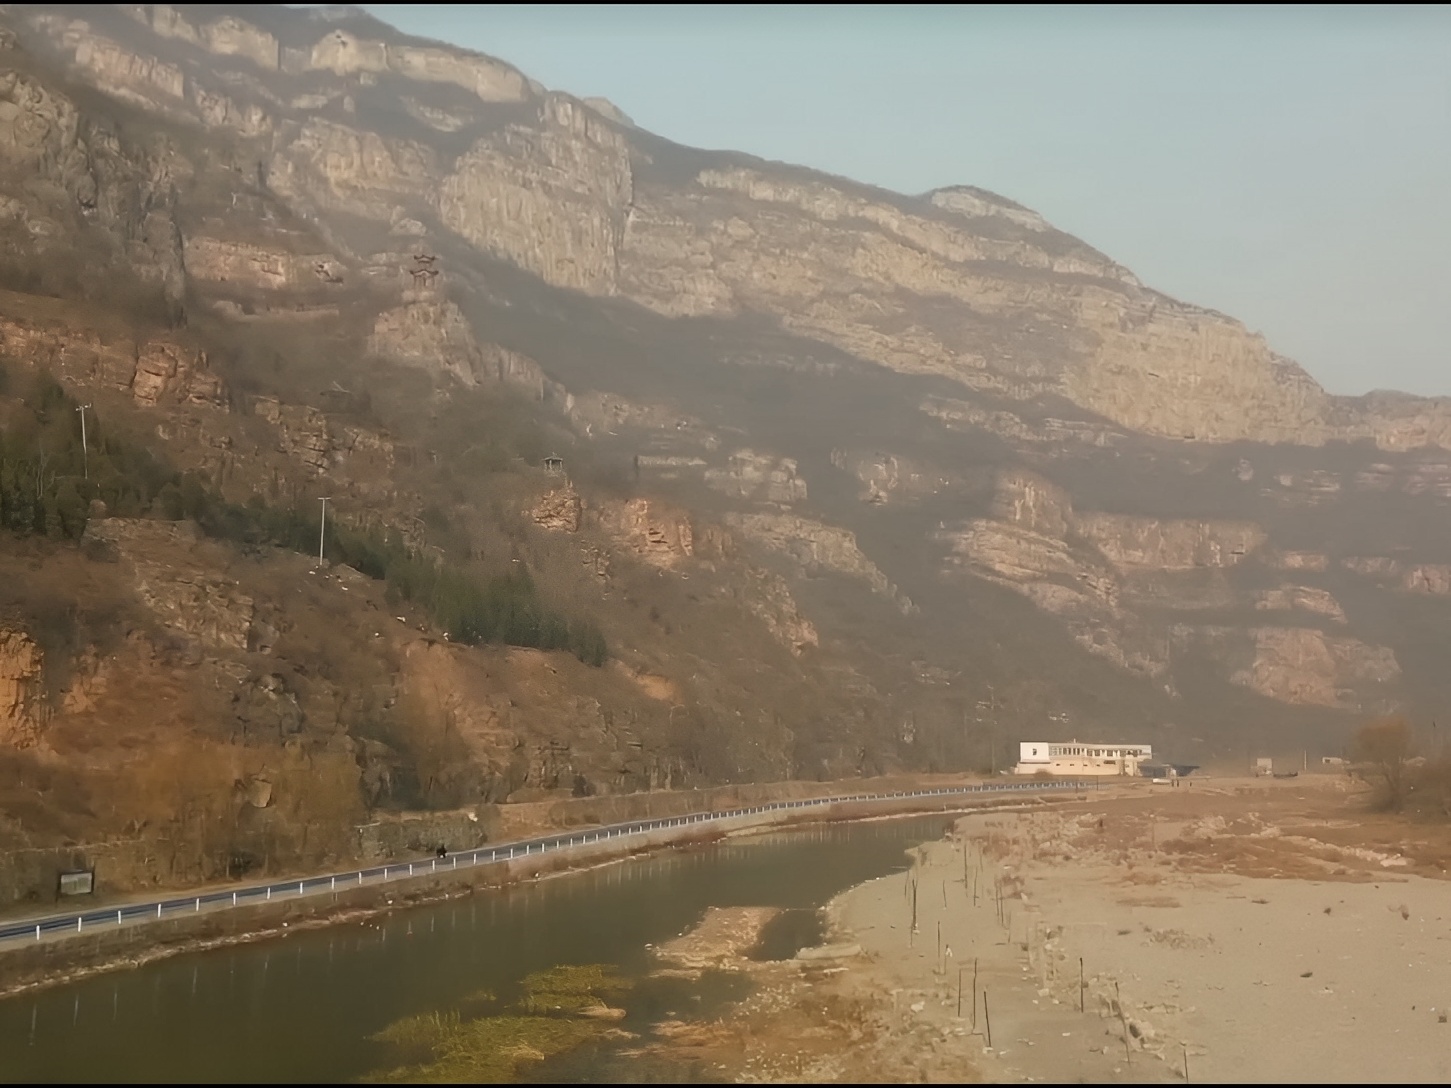 河南焦作丹河峡谷风景如画，景色迷人，是摄影爱好者和自然探索者的天堂。 焦作丹河峡谷位于河南省焦作市，